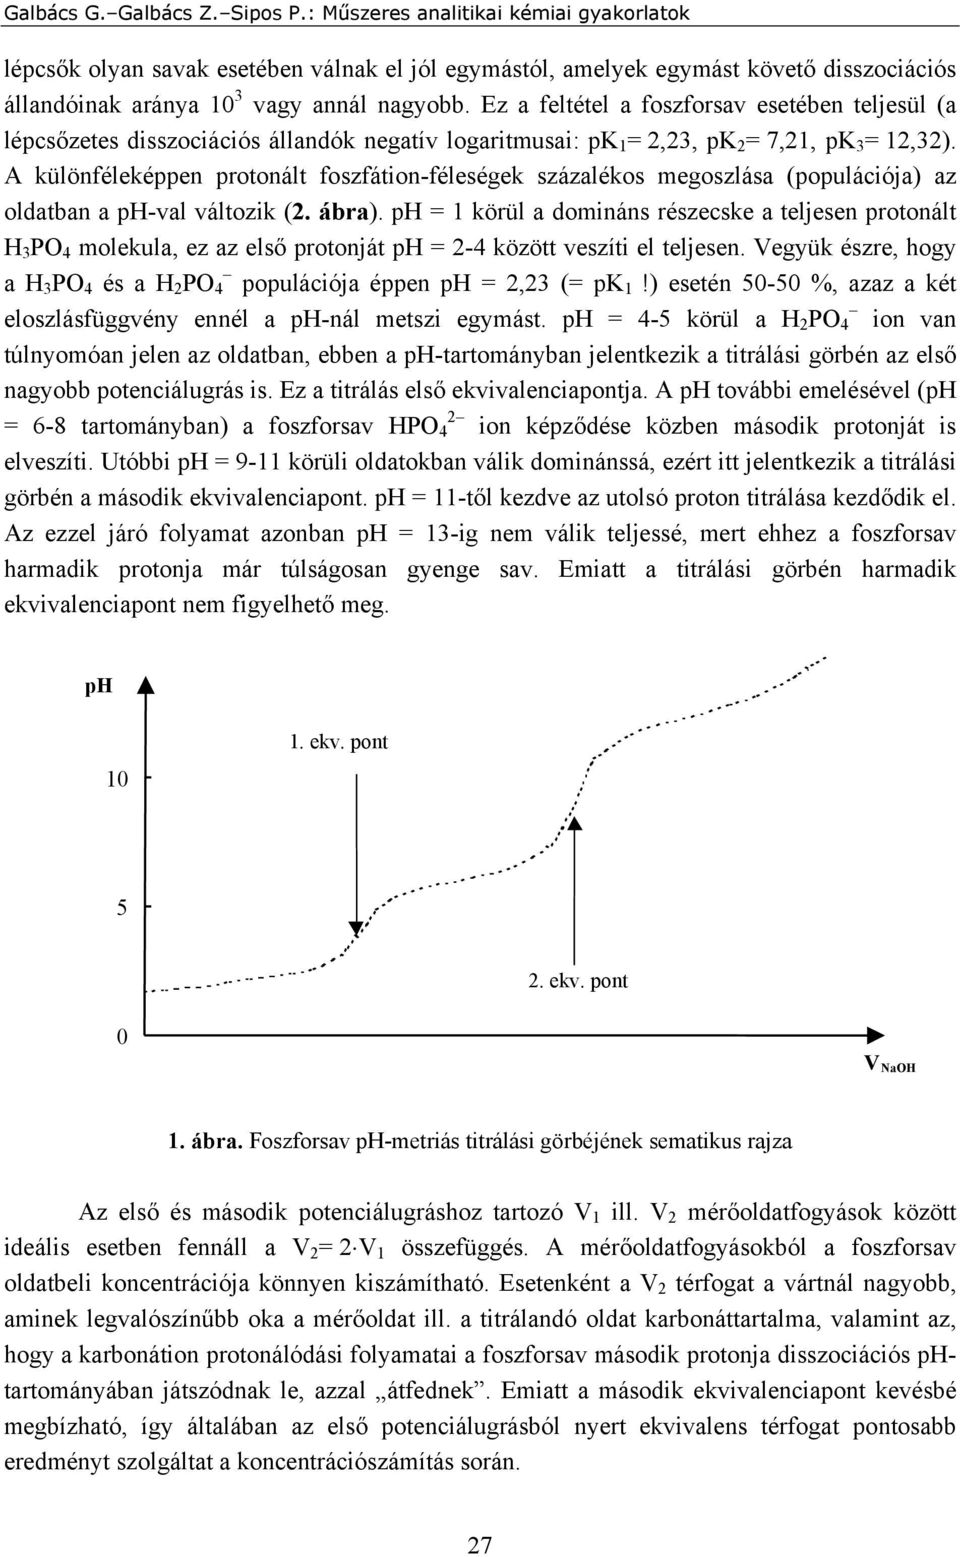 A különféleképpen protonált foszfátion-féleségek százalékos megoszlása (populációja) az oldatban a ph-val változik (2. ábra).